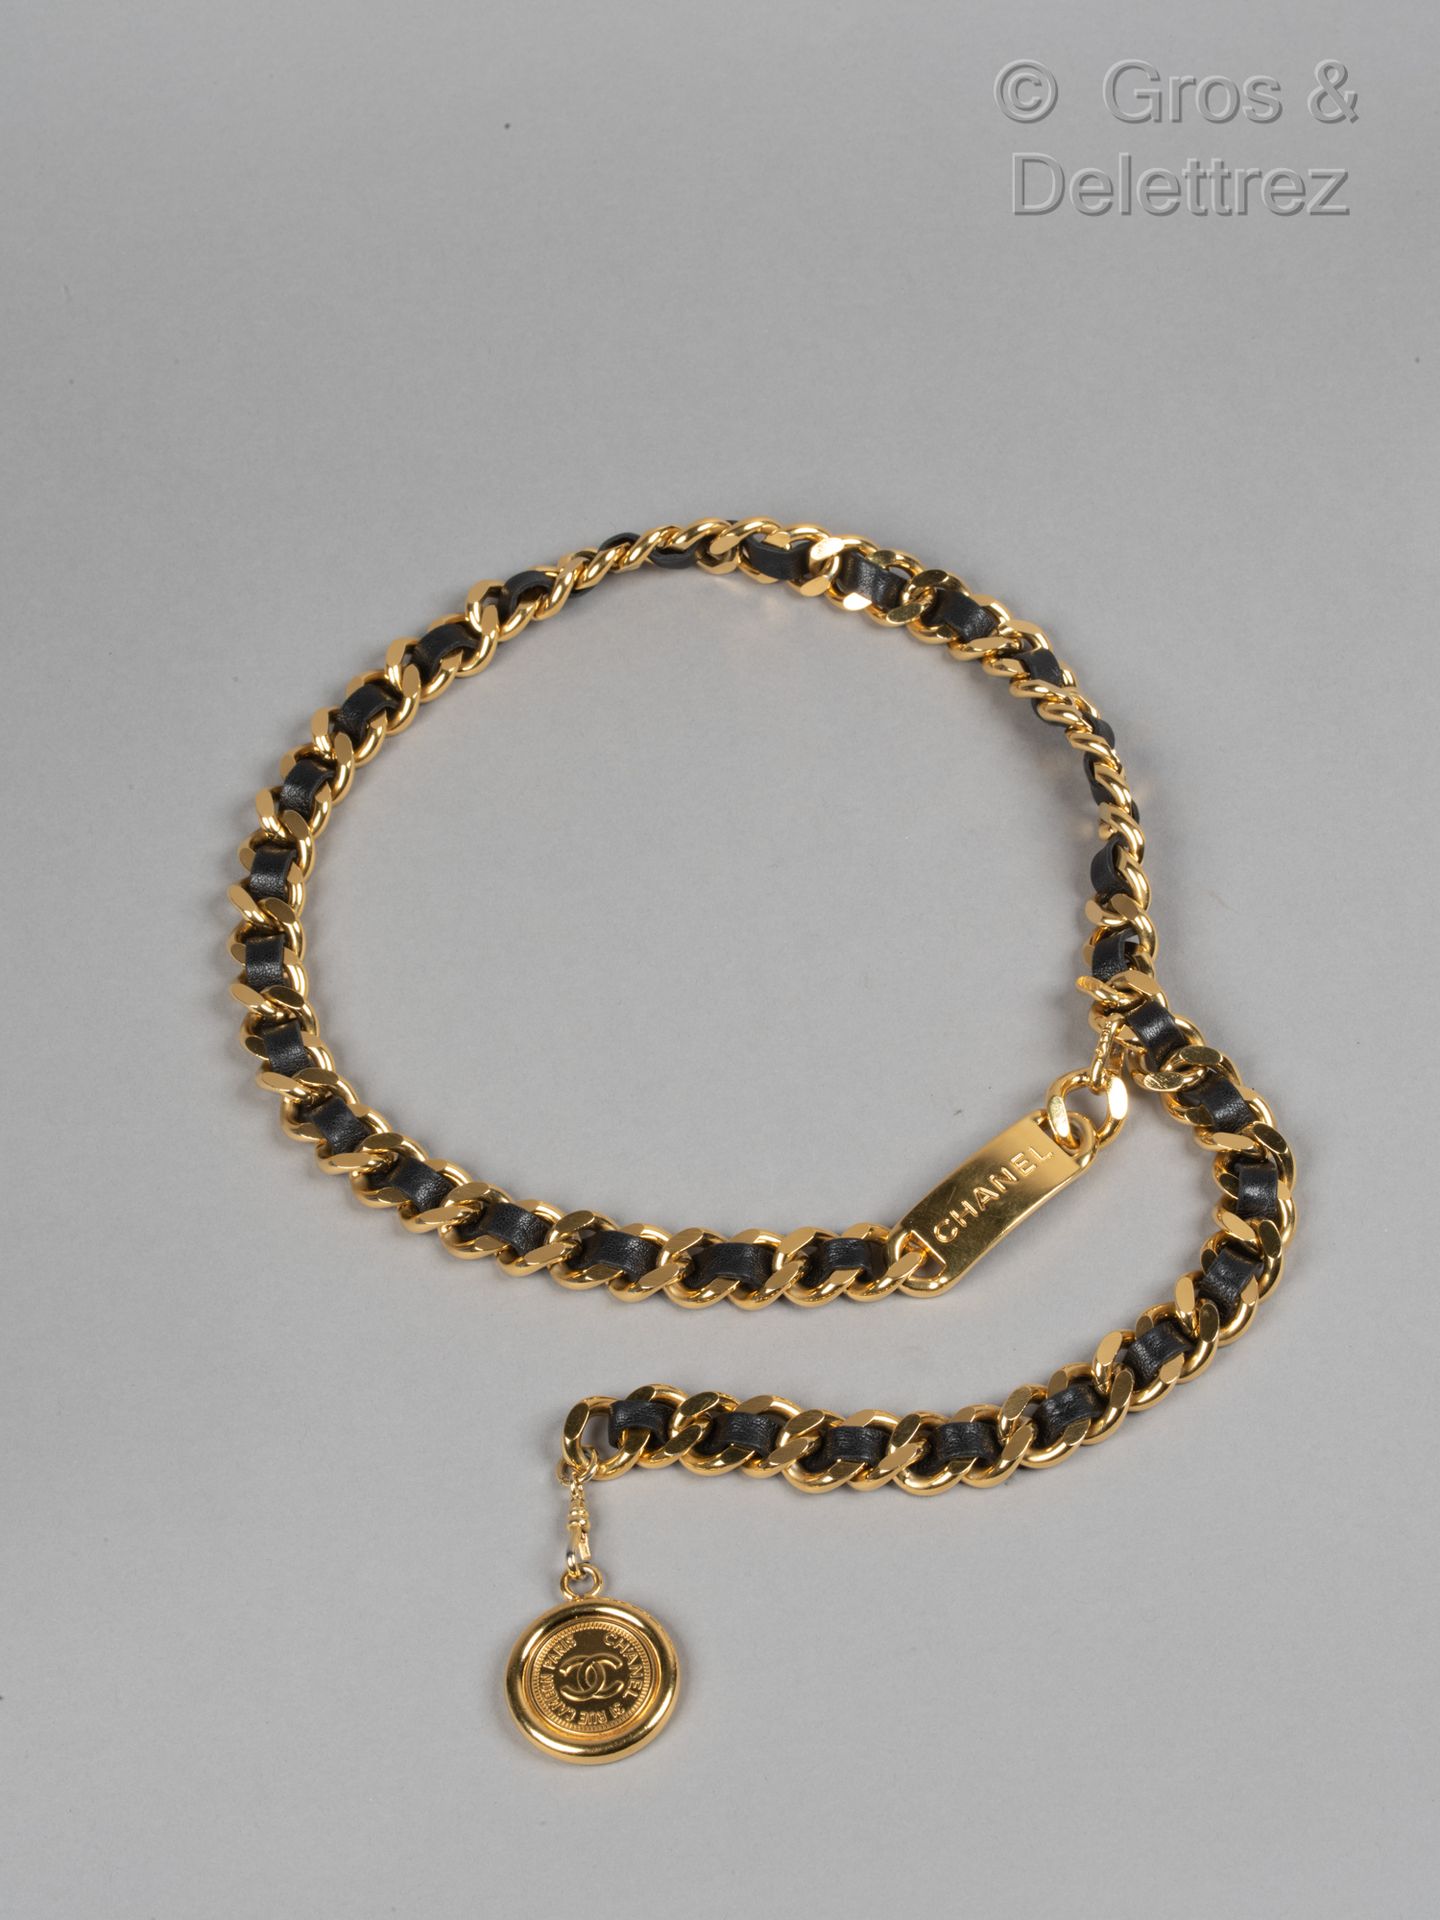 Null 卡尔-拉格斐的香奈儿

1996-1997年秋冬季成衣系列

镀金金属链带与黑色小羊皮交错在一起，最后是一个印有品牌名称的奖章，钩扣。签名。长度：83&hellip;